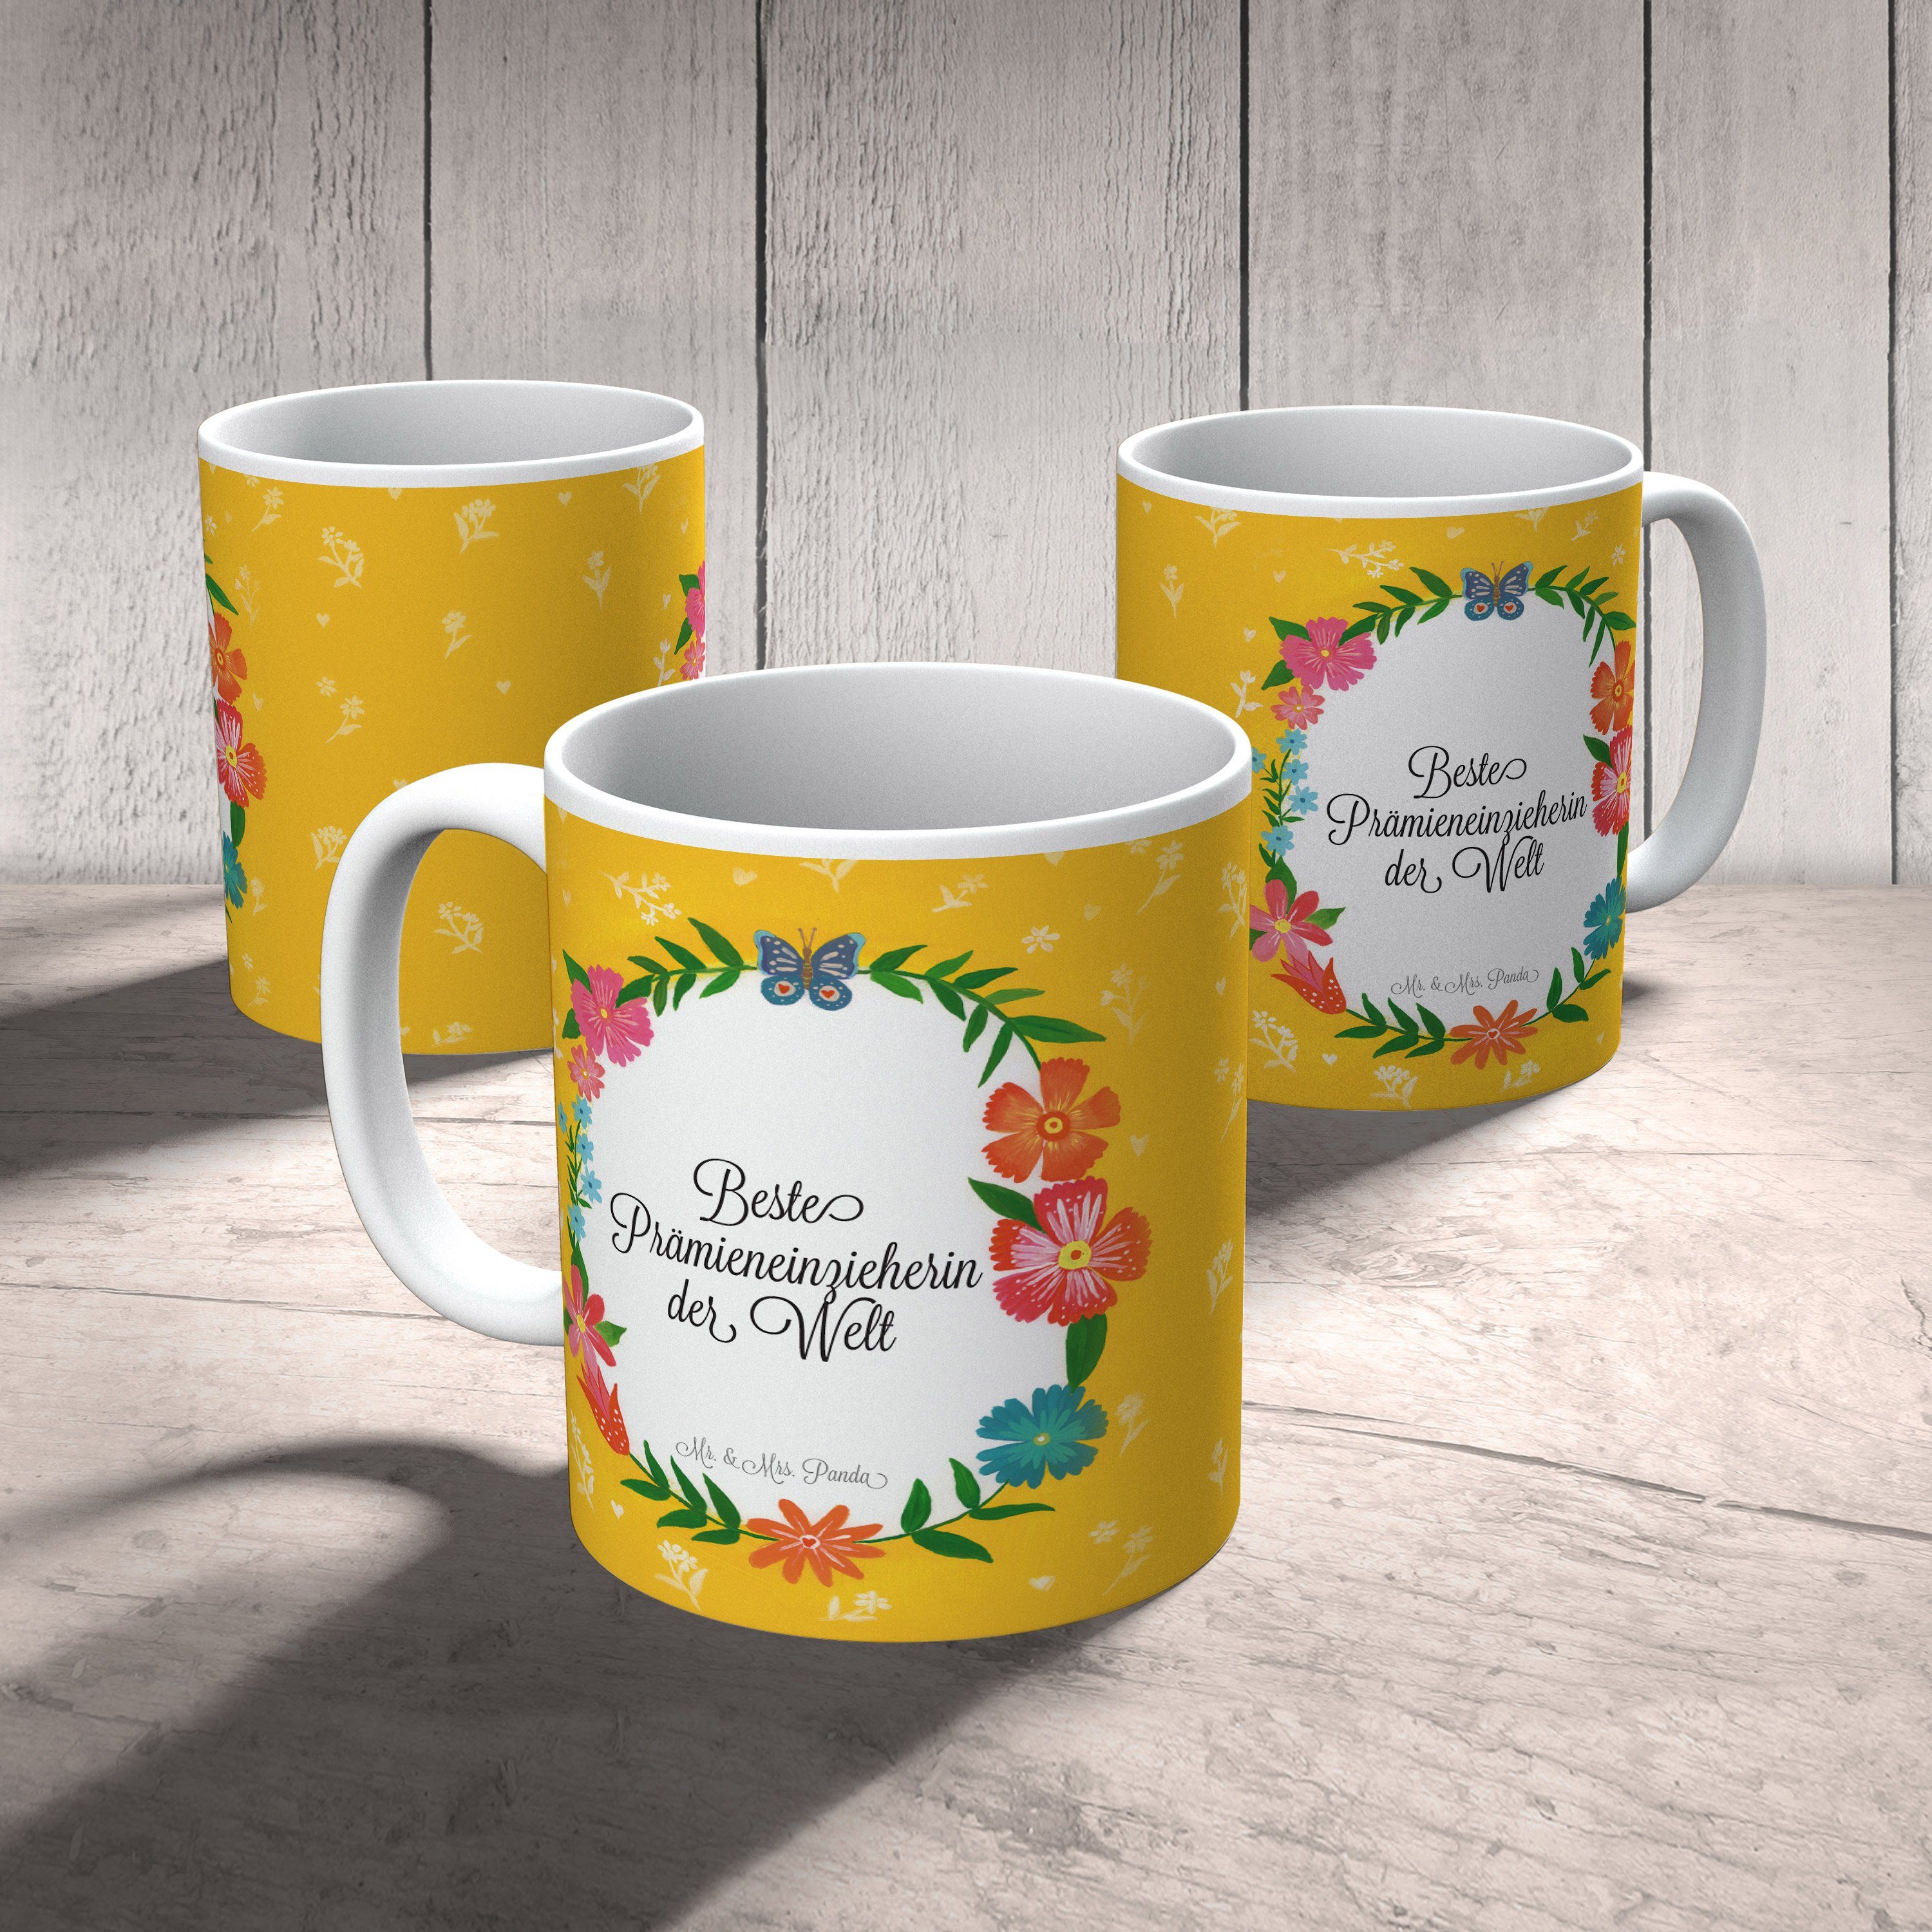 Keramik & Geschenk, Gratulati, Tasse Mr. Sprüche, Mrs. Panda Prämieneinzieherin - Tasse Kaffeebecher,